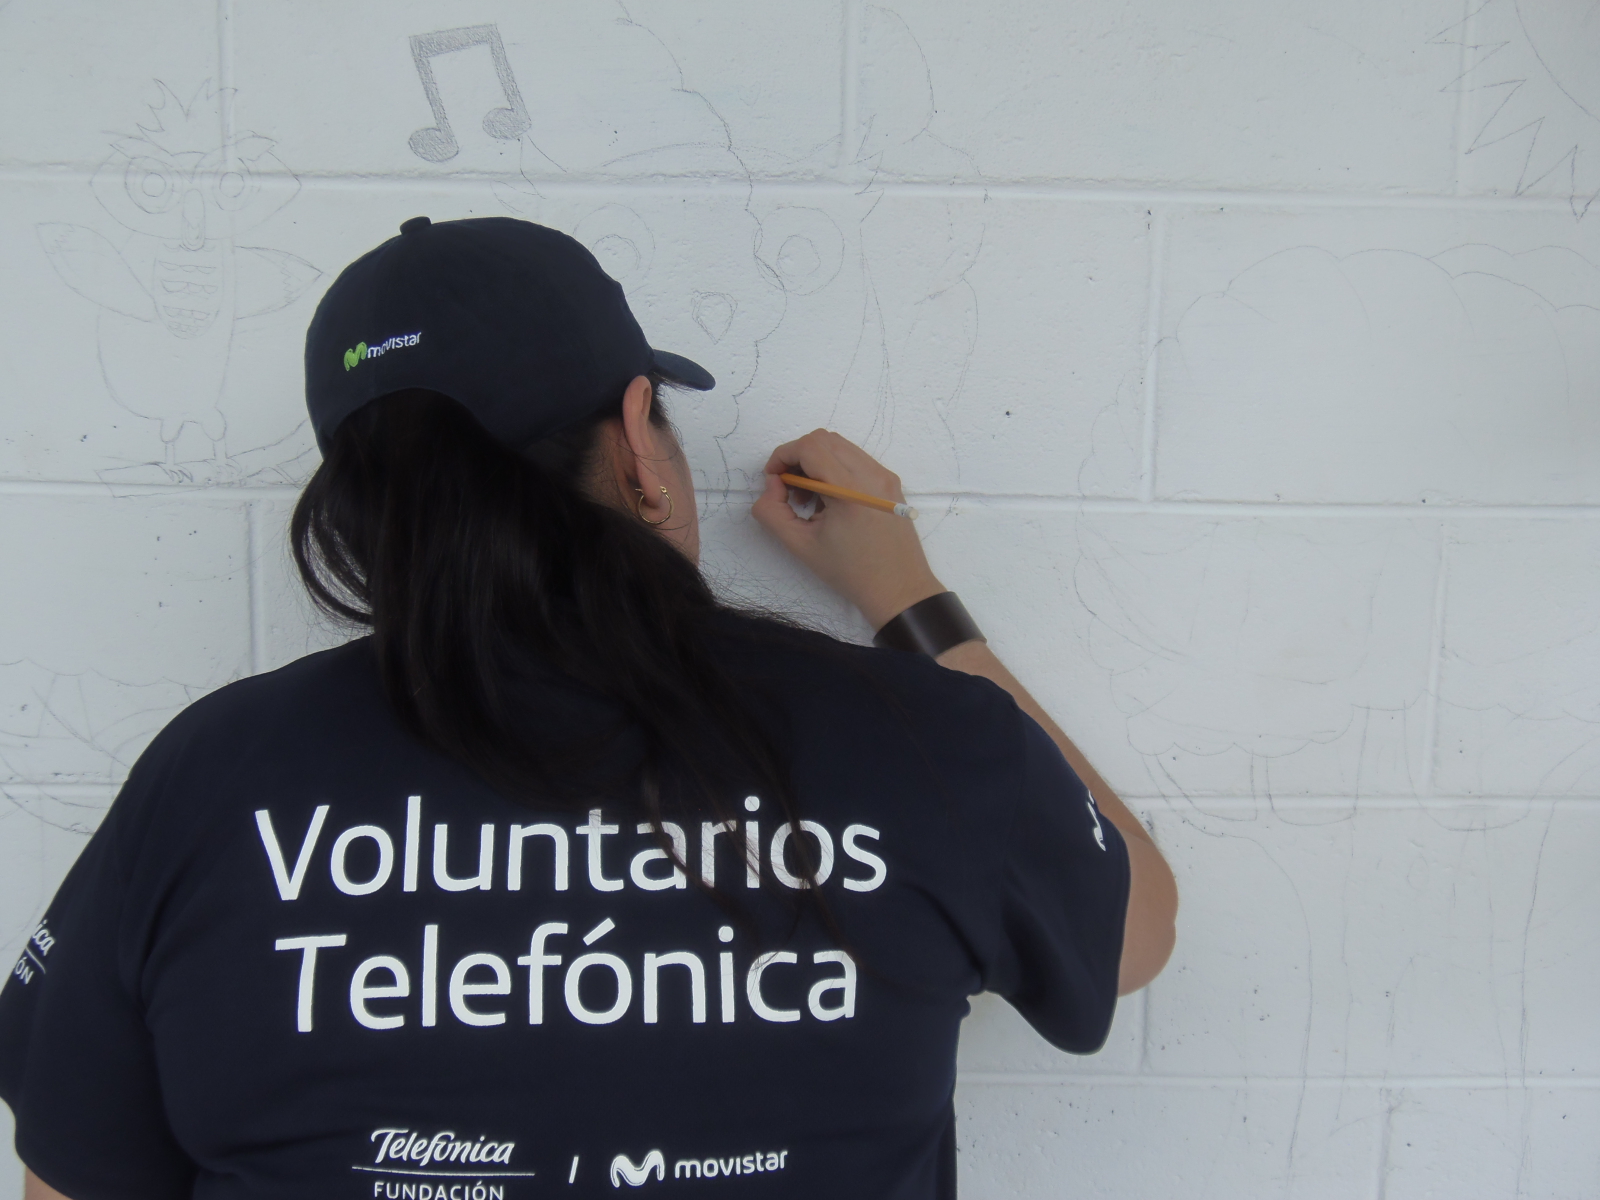 Centro escolar Lotificación El Rosario fue beneficiado con el proyecto de voluntariado Telefónica de la empresa Movistar